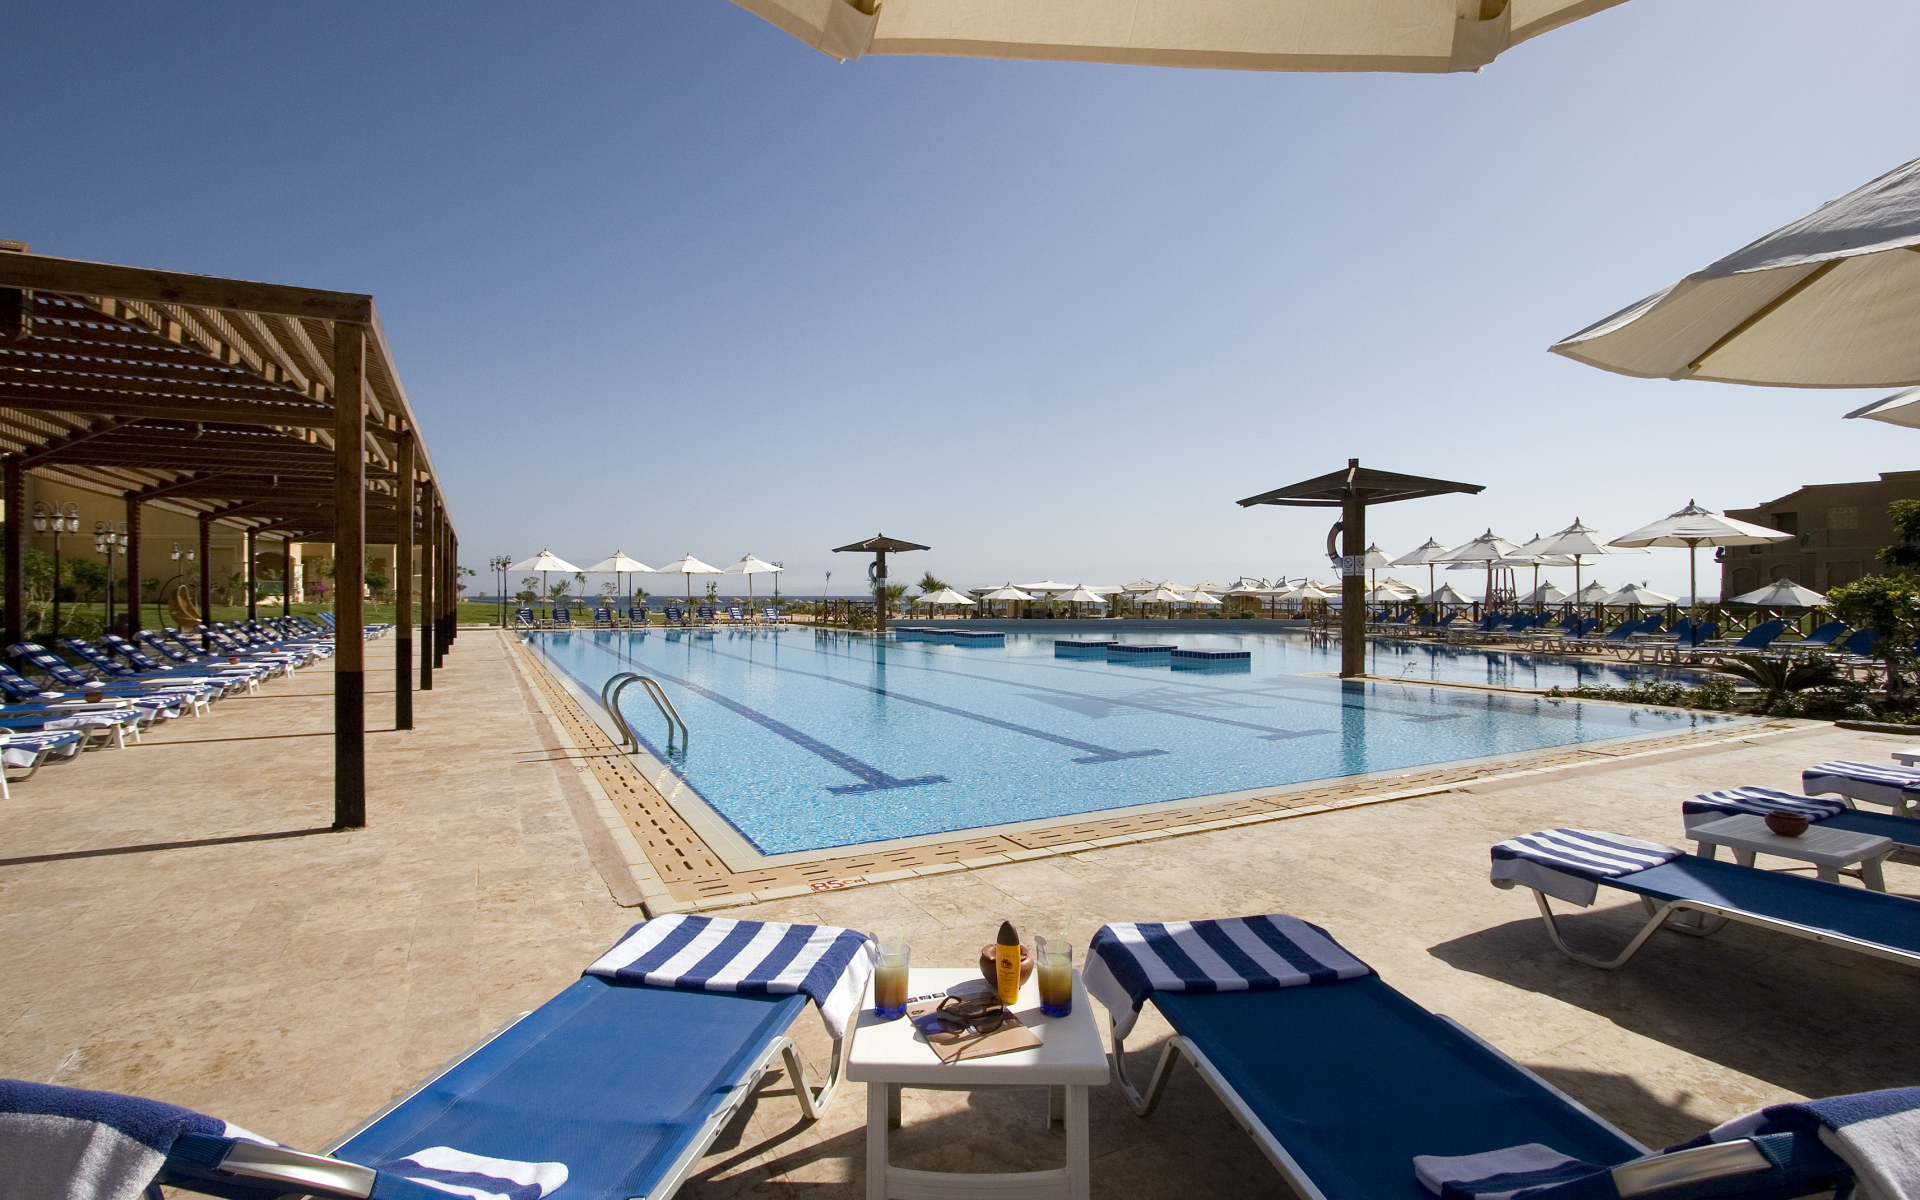 Бассейн в отеле на побережье на курорте Таба, Египет